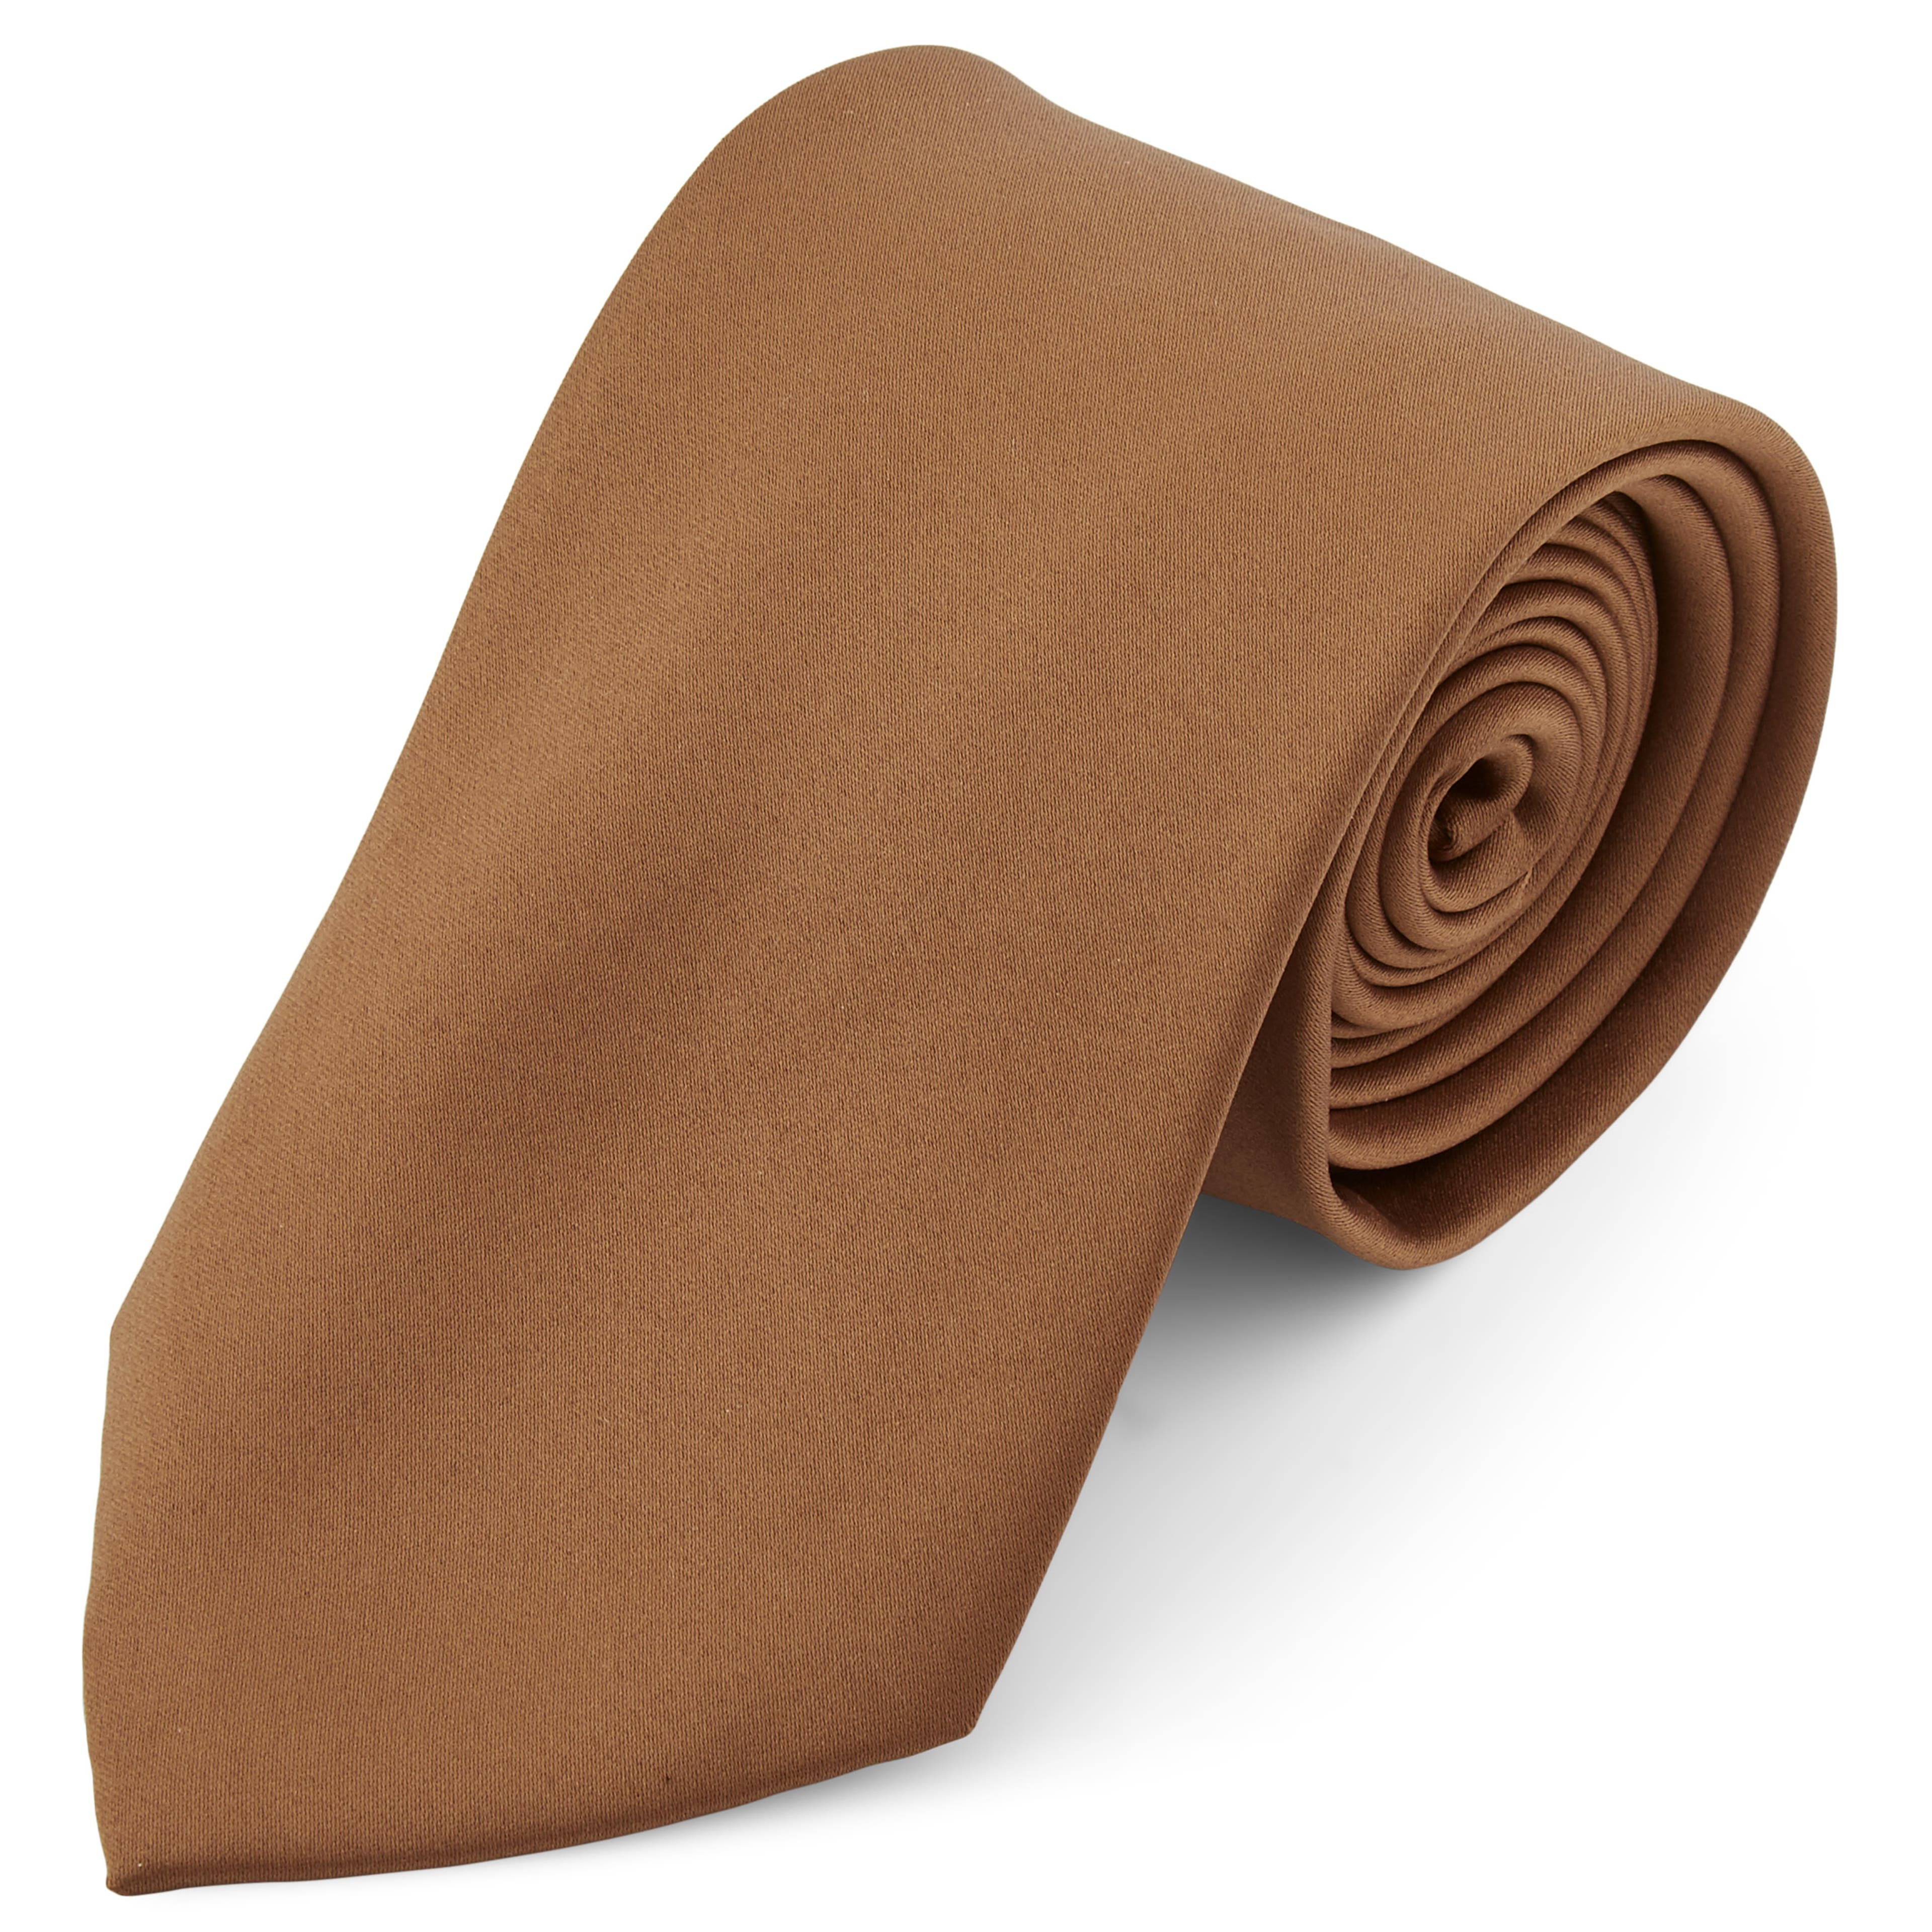 Cravată simplă maro deschis 8 cm